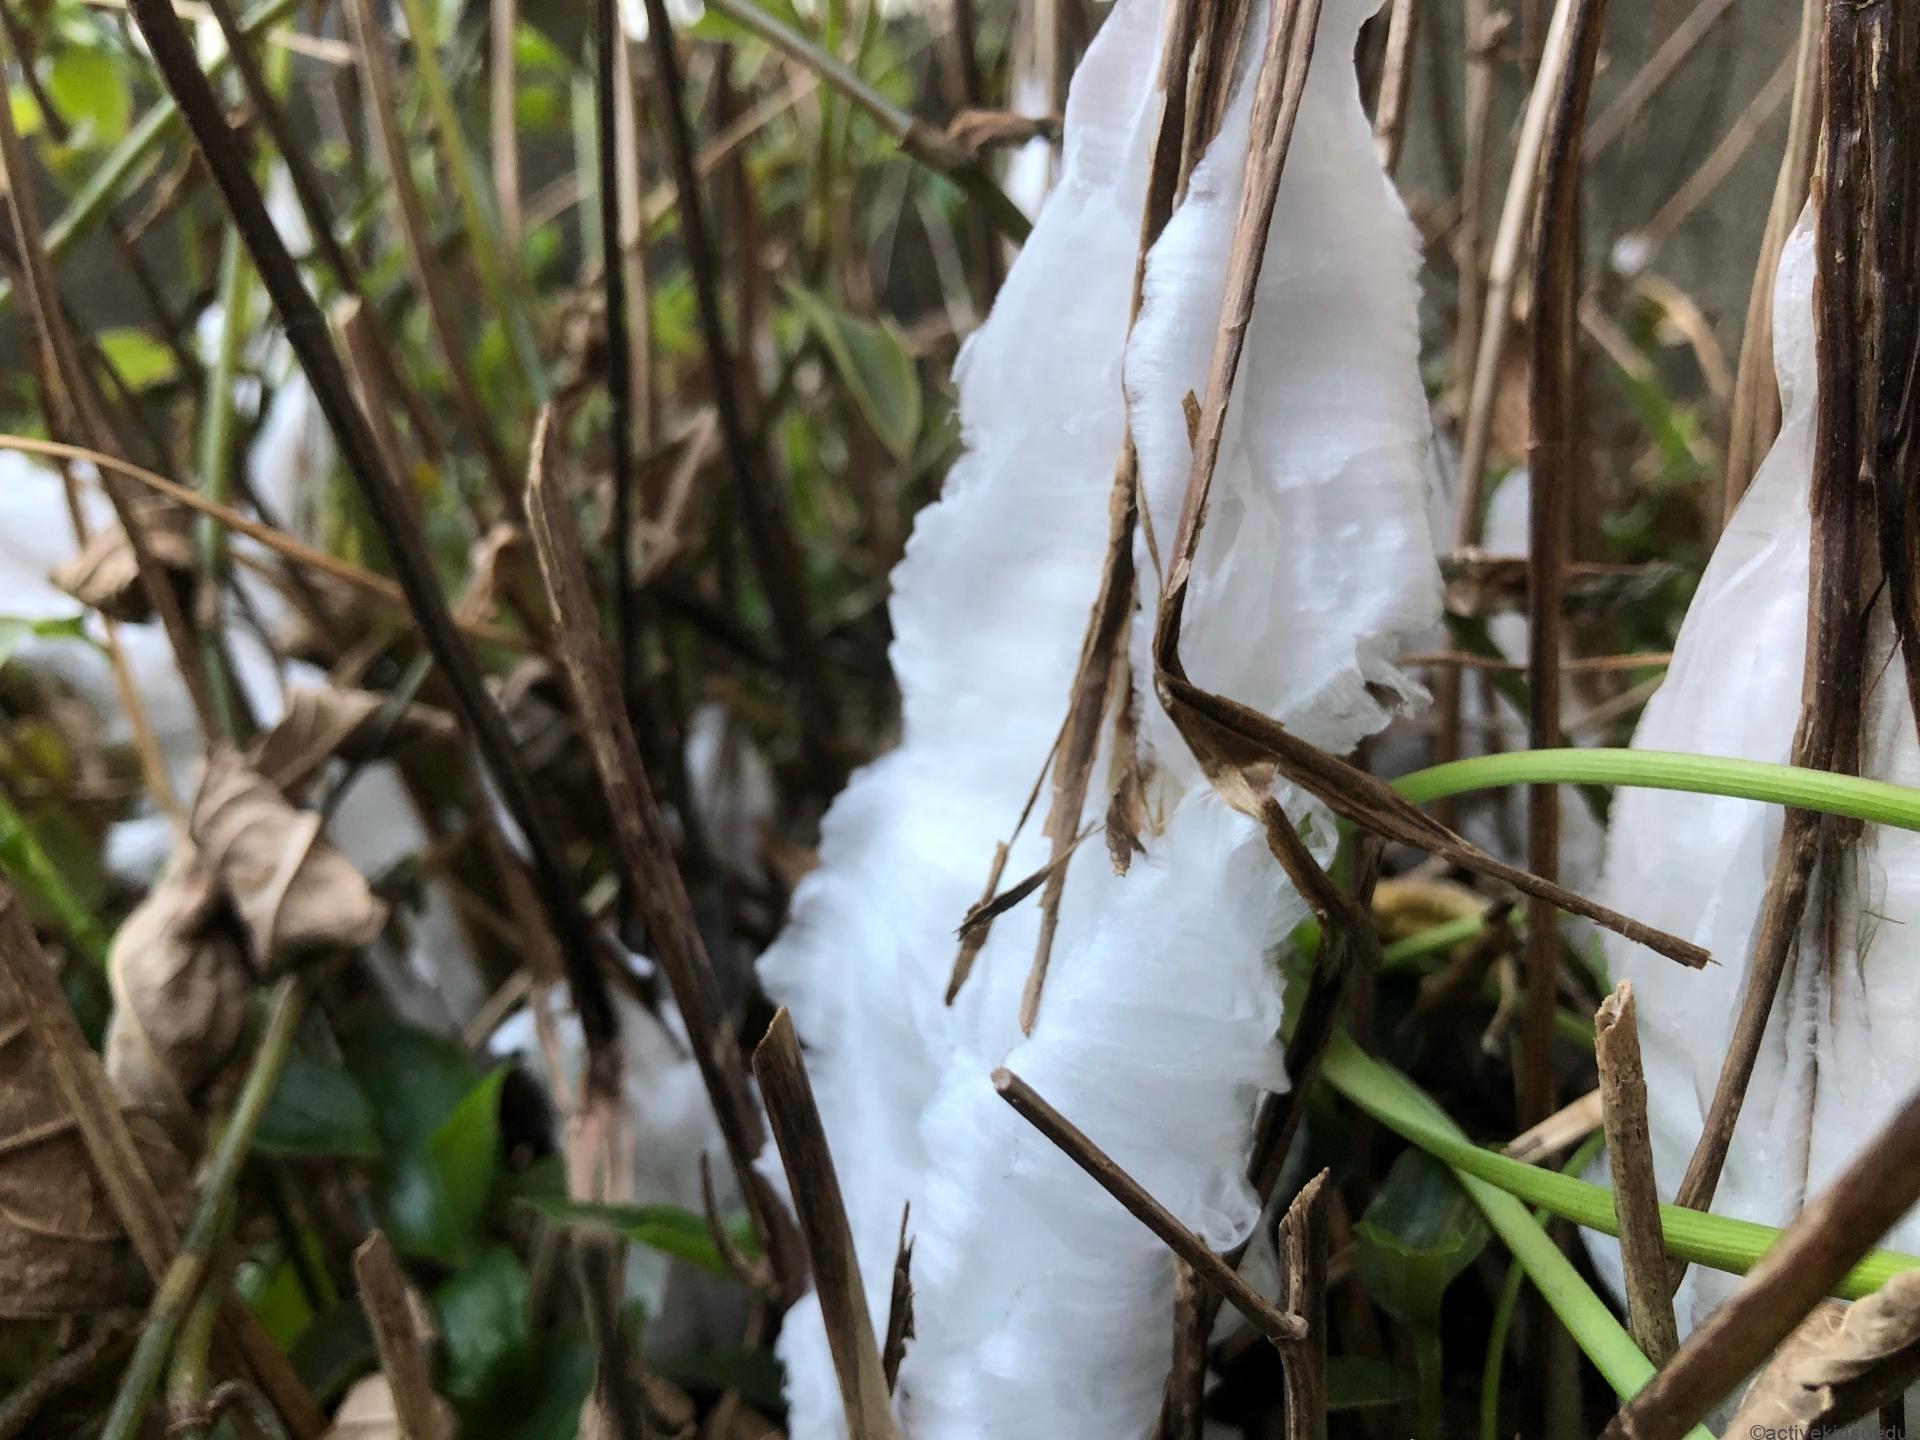 点下に気温が下がる季節になると、地中から吸いあげた水分が凍り、氷の華となった「シモバシラ」のニュースが流れます。

この写真の「シモバシラ」は植物の名前。わたしはこの「シモバシラ」を知ってから、「氷点下」に下がりますというニュースを聞くとワクワクするようになりました。

近くの植物園に「シモバシラ」を見に行けるからです！　そんな「シモバシラ」について紹介します。